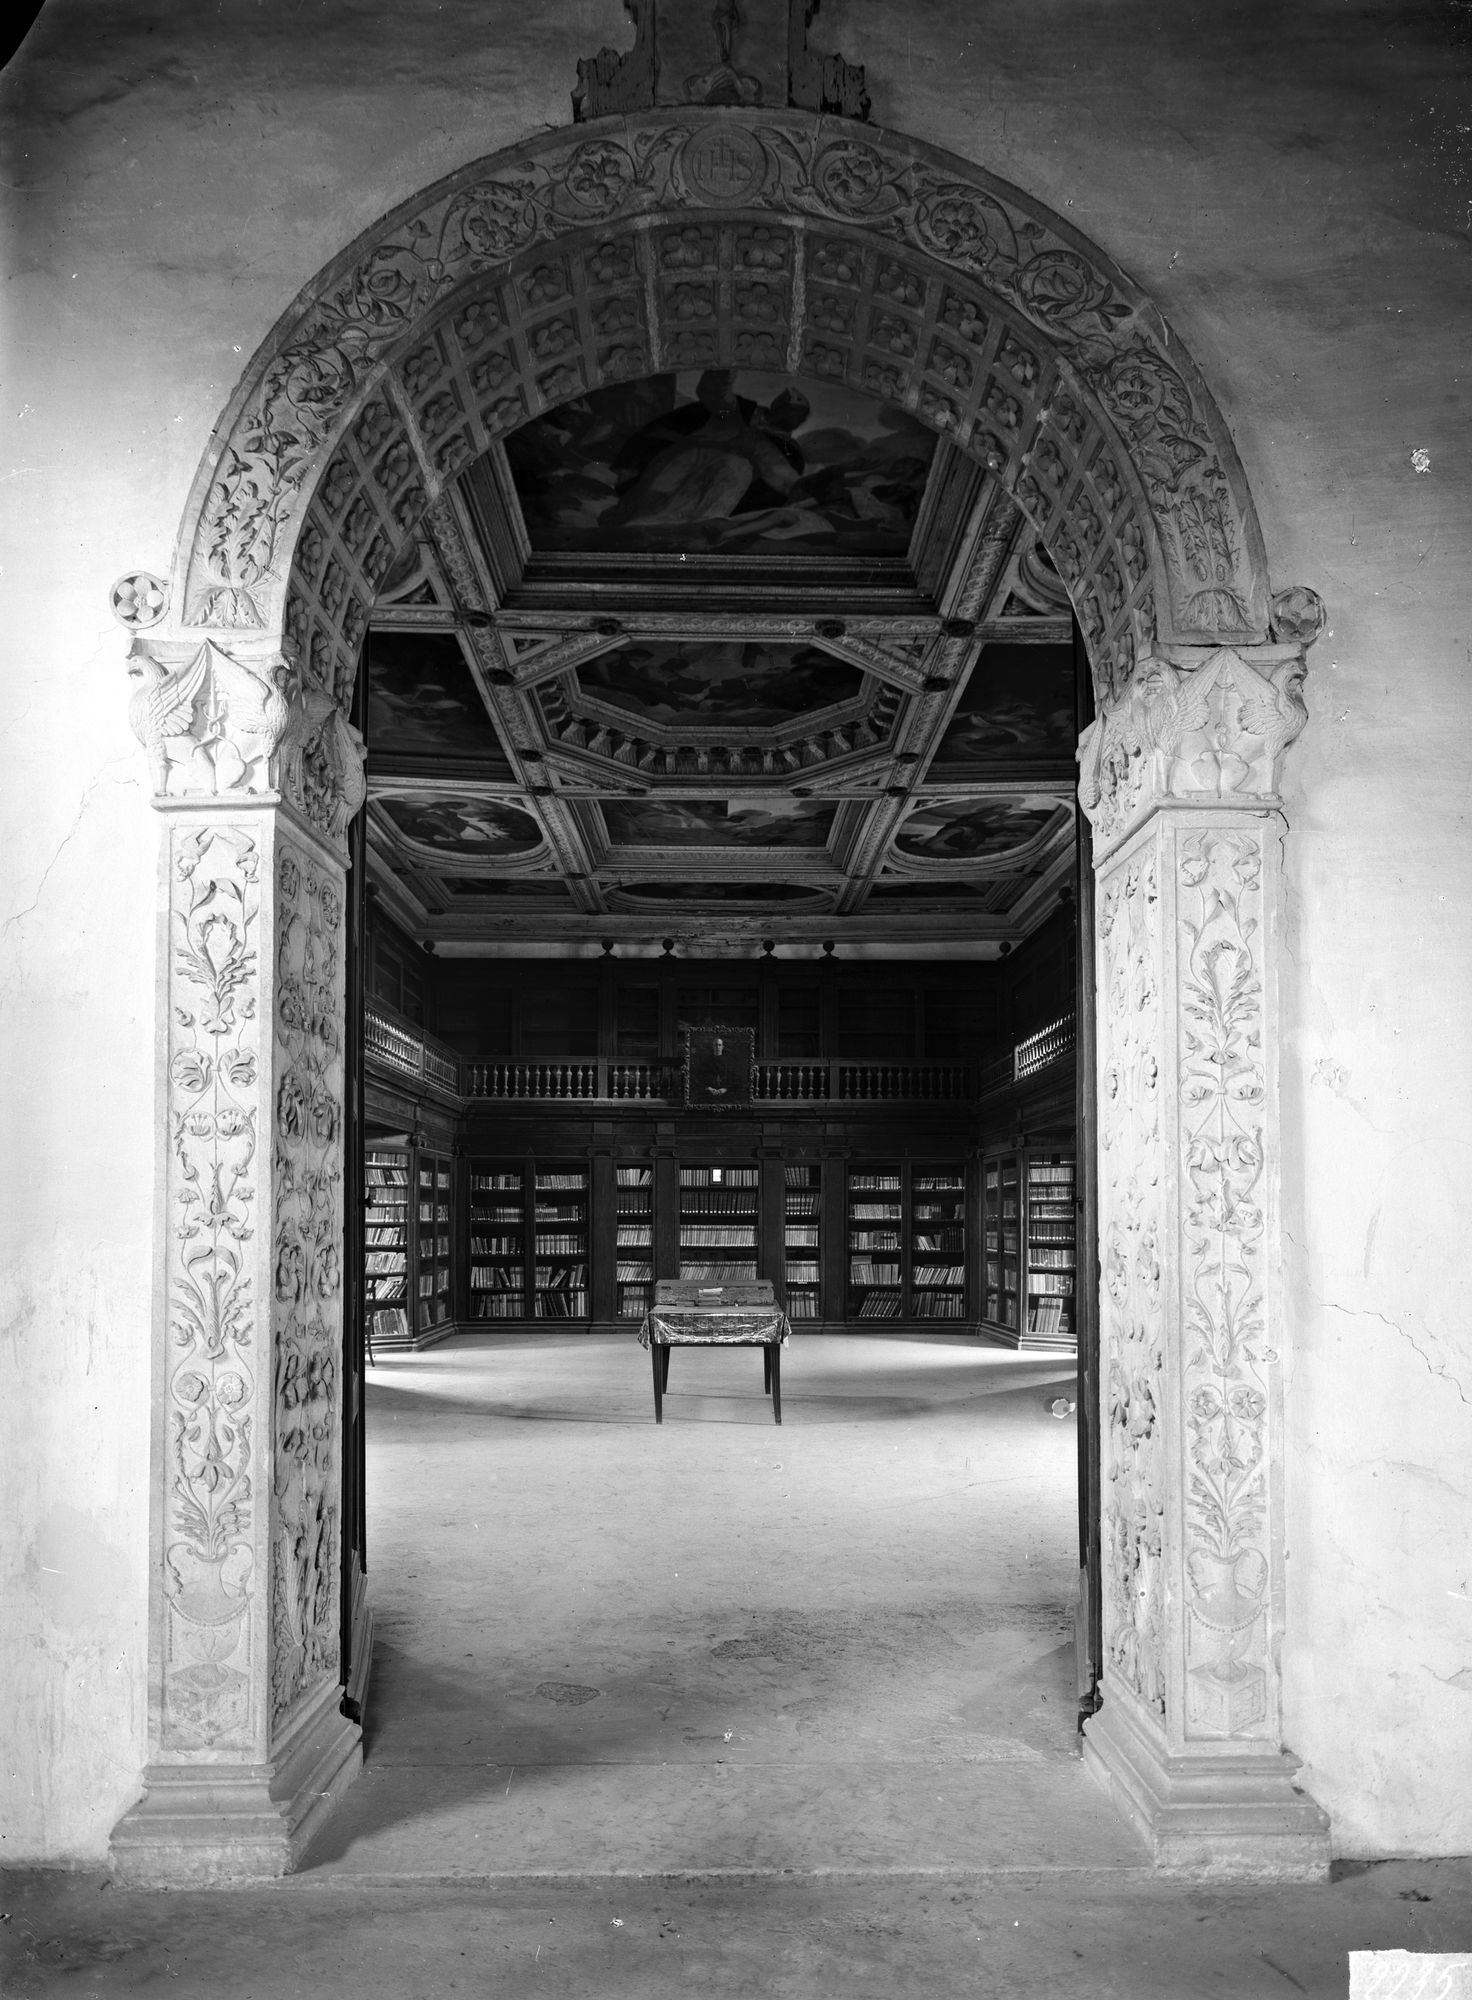 Monastero di praglia. La biblioteca con i dipinti del Belotti ricolorati nel soffitto (negativo) di Gabinetto fotografico (XX)